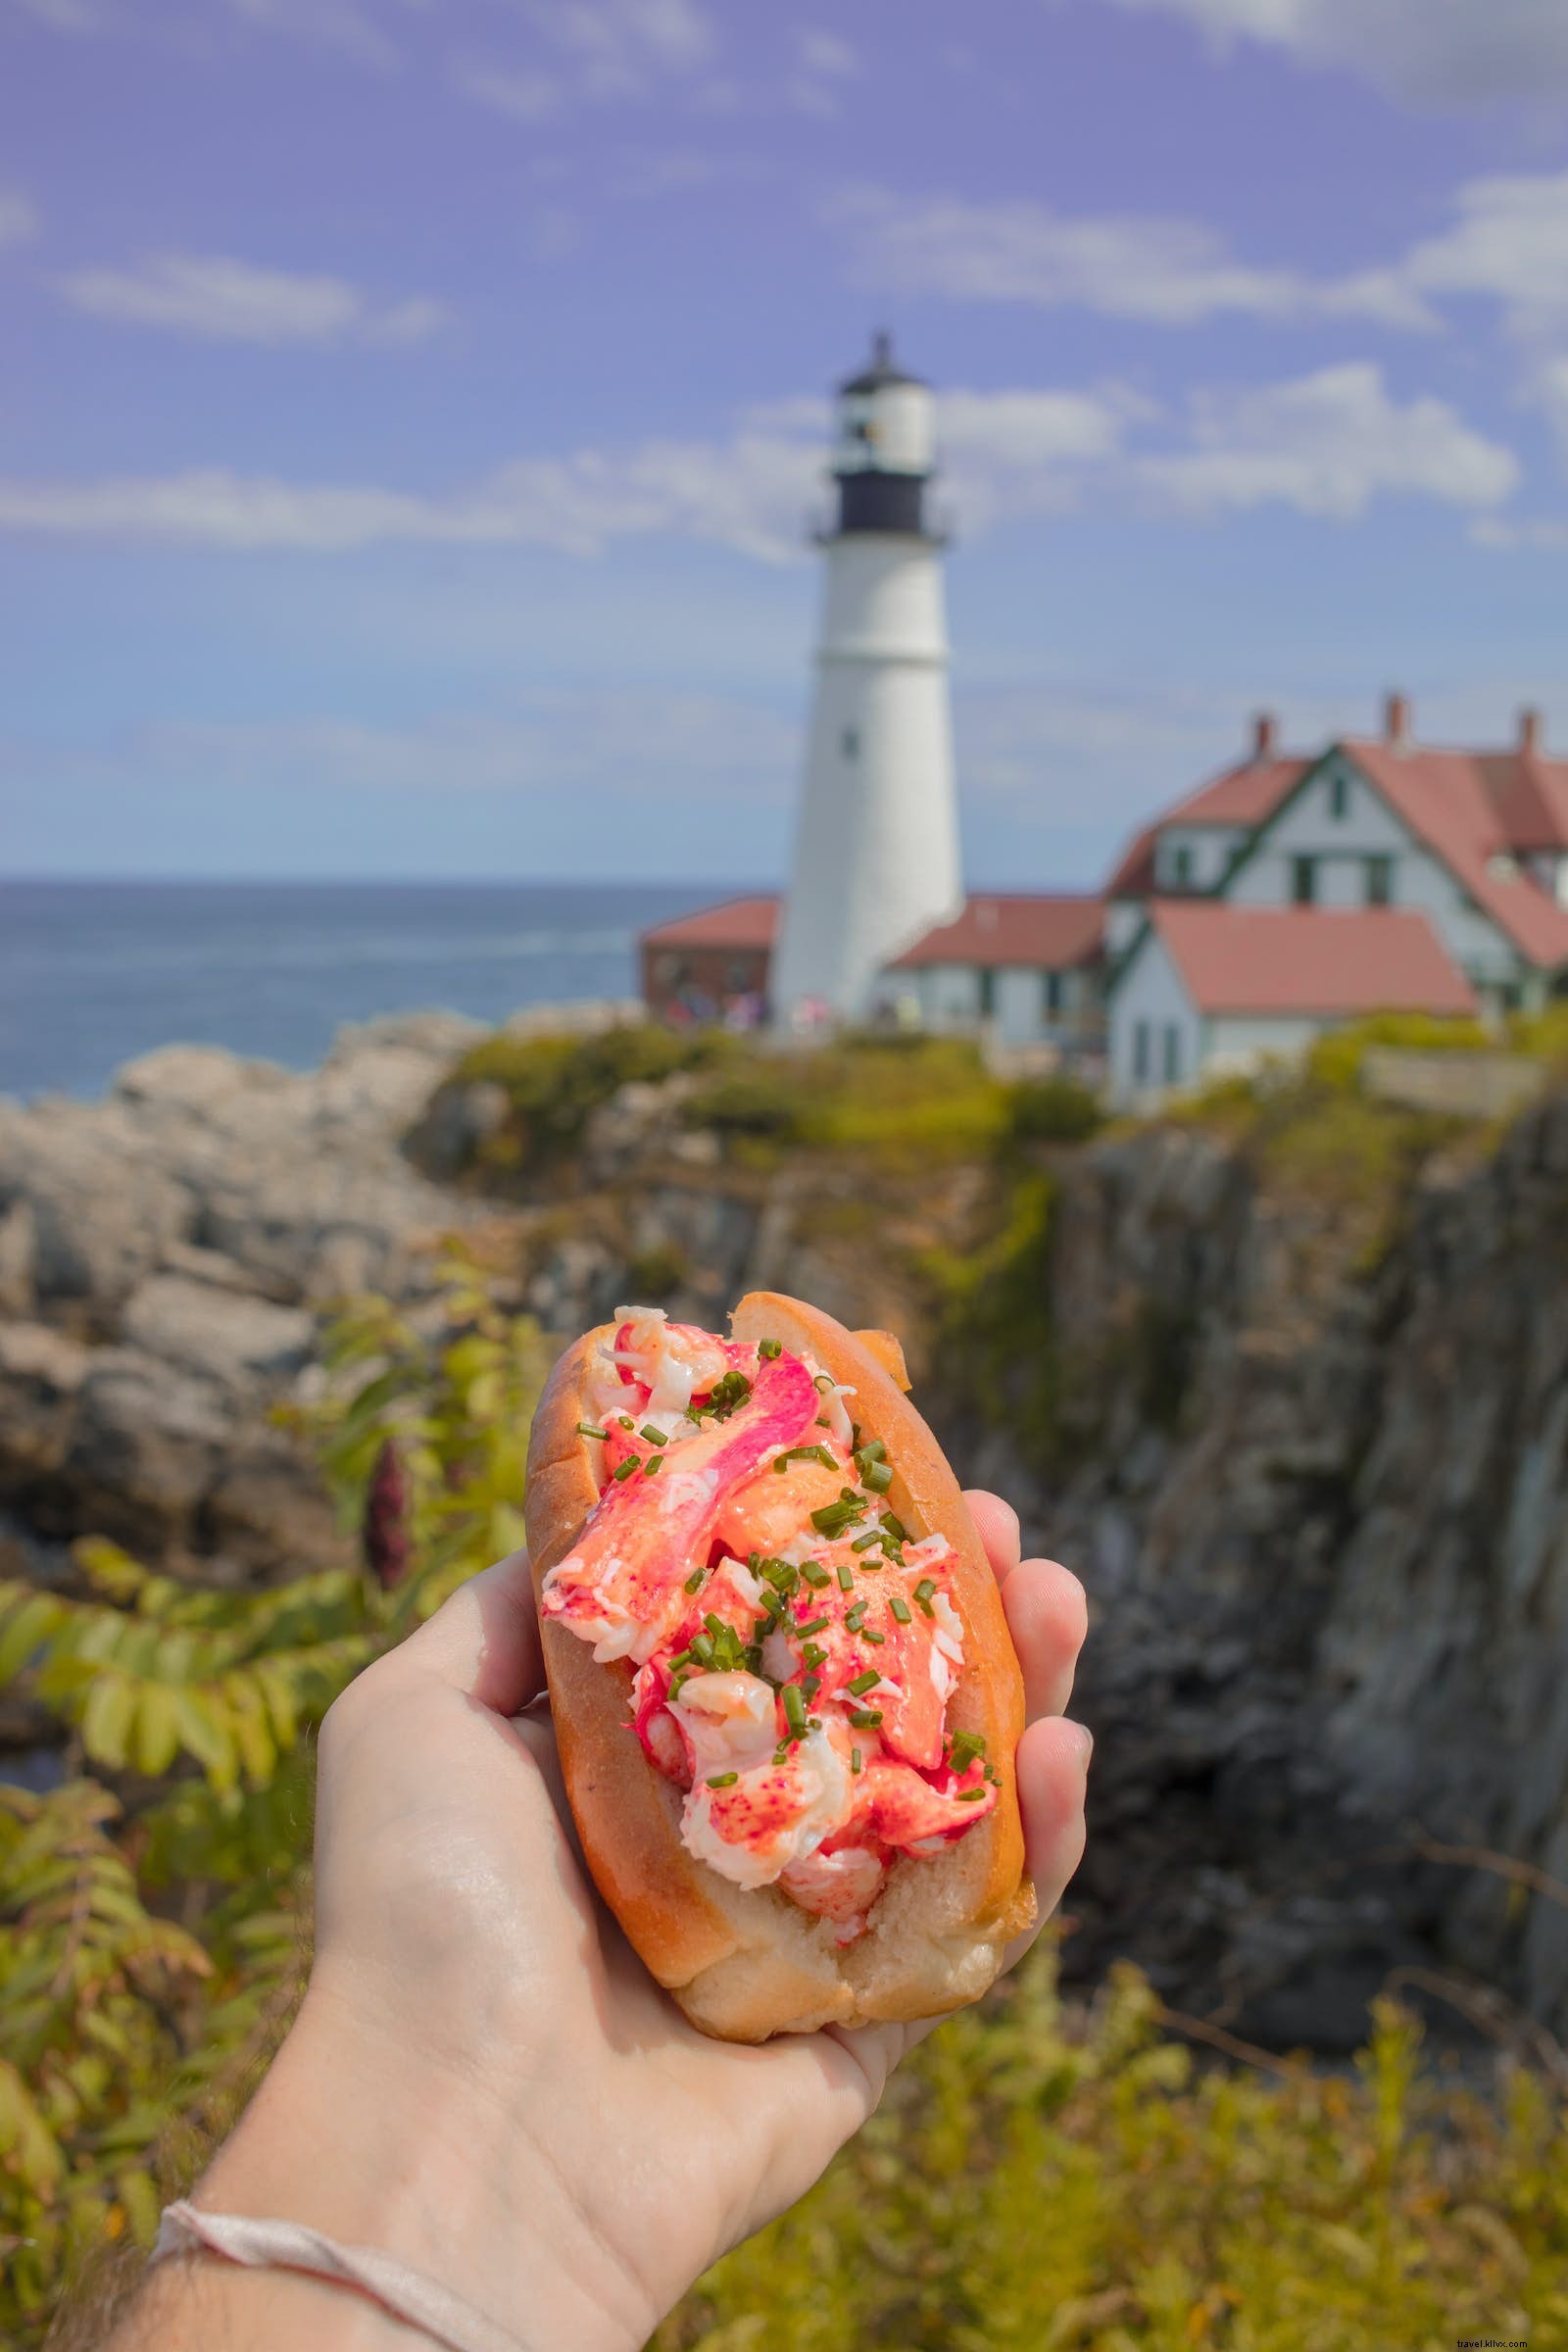 Le specialità della città da spiaggia:i panini da mangiare in riva al mare 